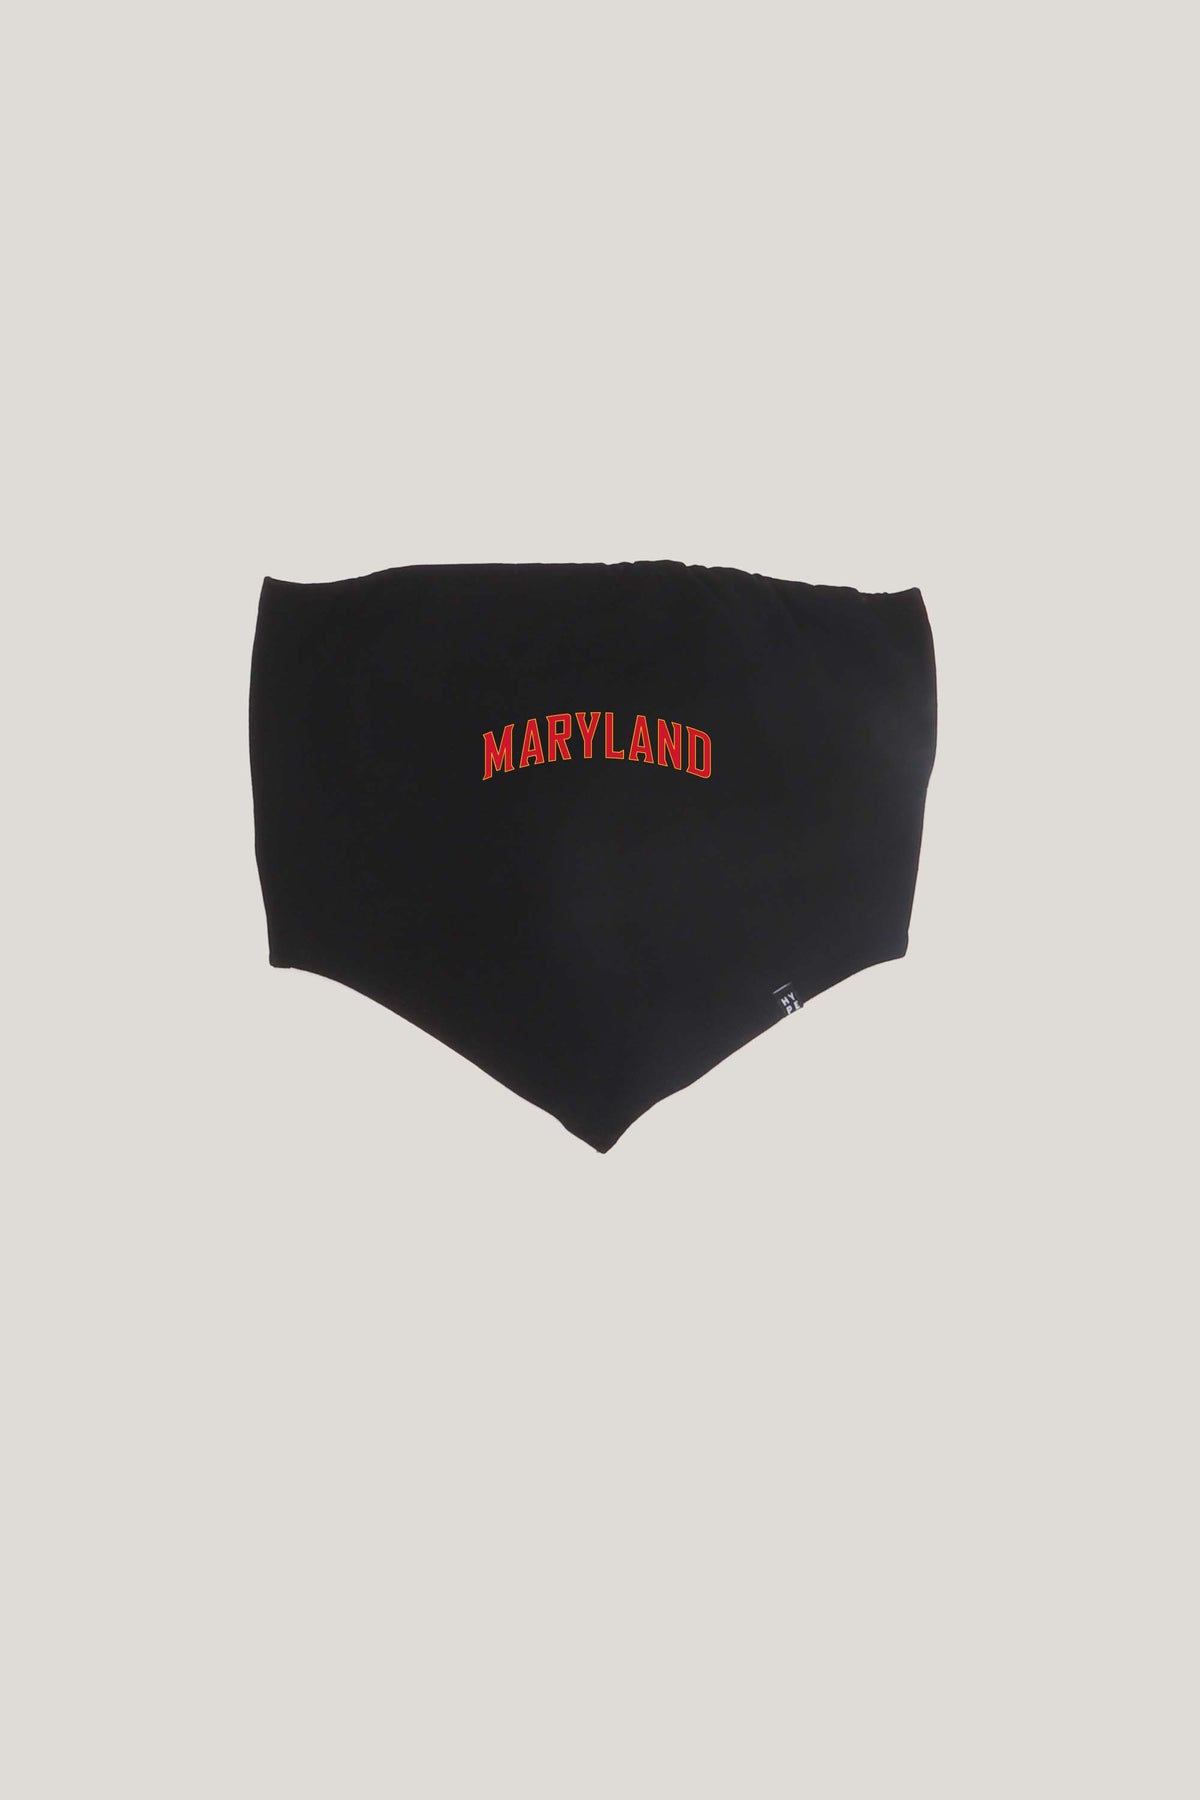 Maryland Bandana Top